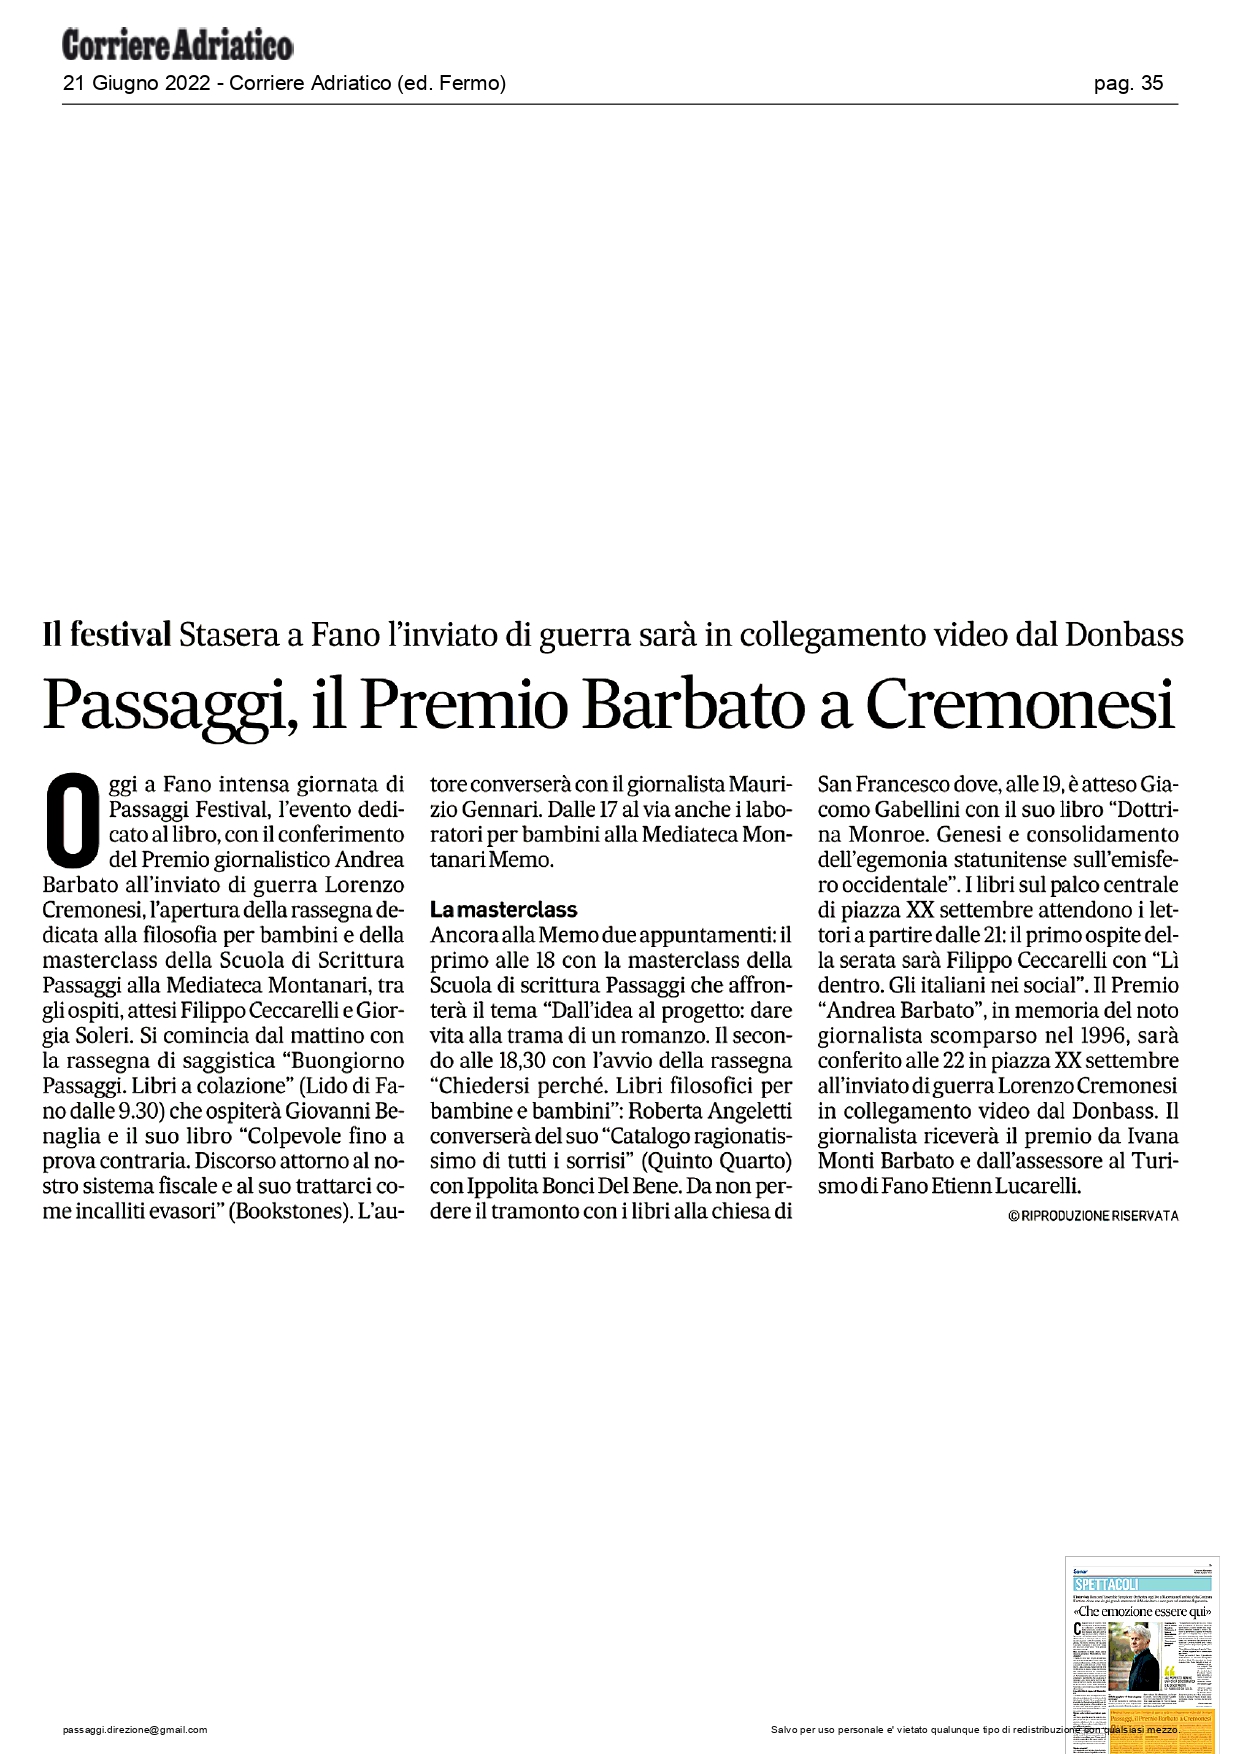 Corriere-Adriatico-ed.-Fermo-Passaggi-il-Premio-Barbato-a-Cremonesi